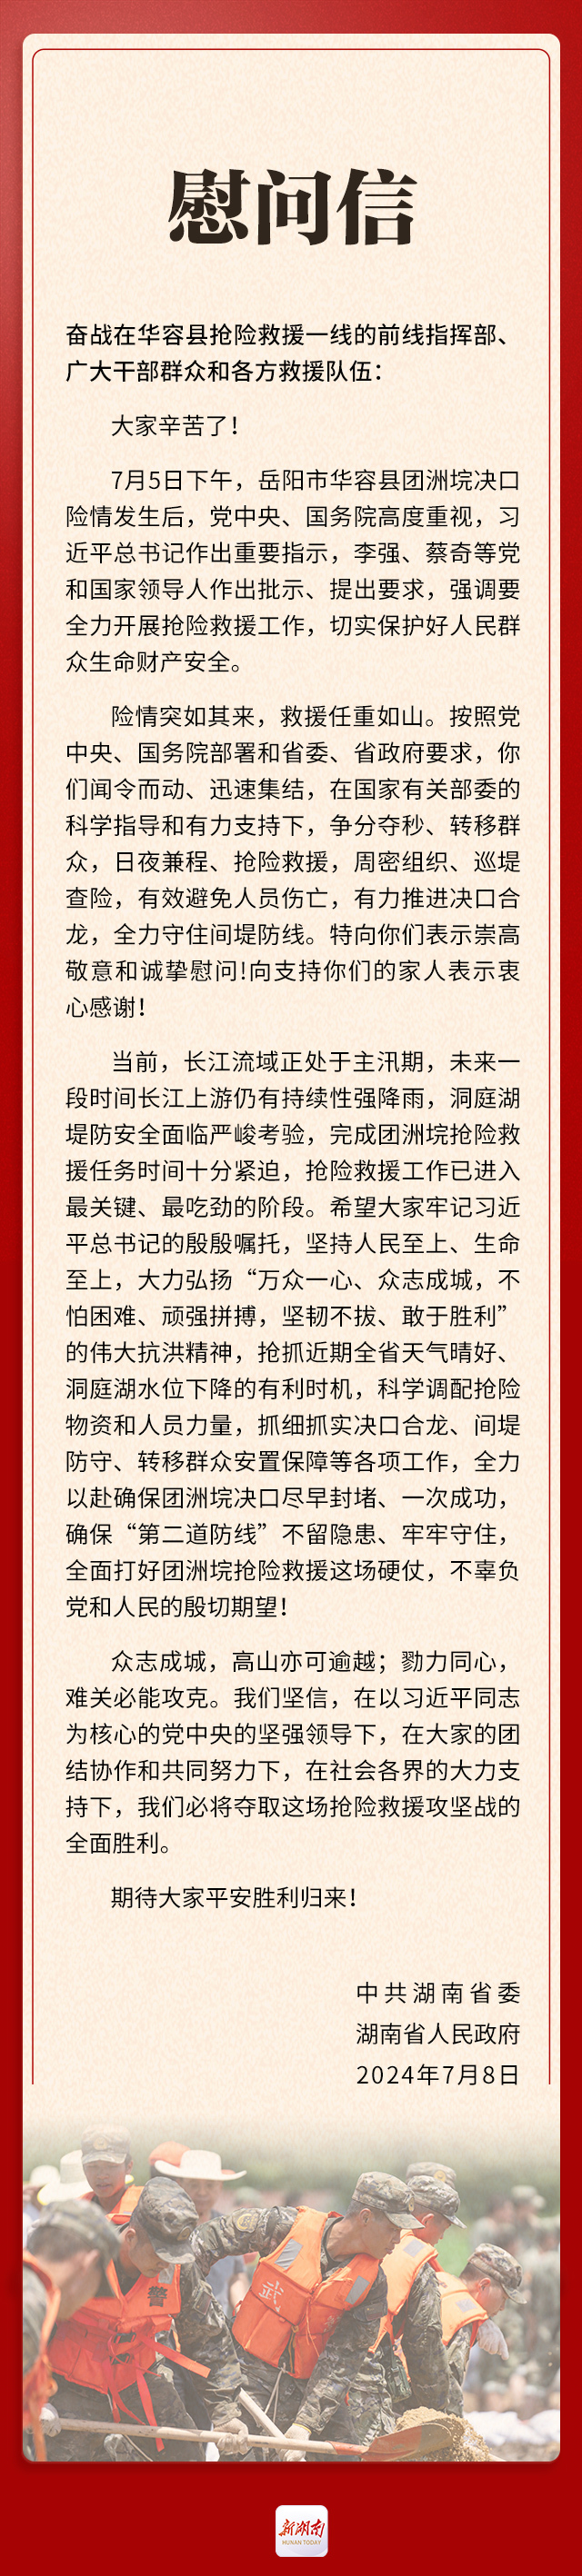 湖南省委省政府向奋战在华容抢险救援一线的全体同志致慰问信